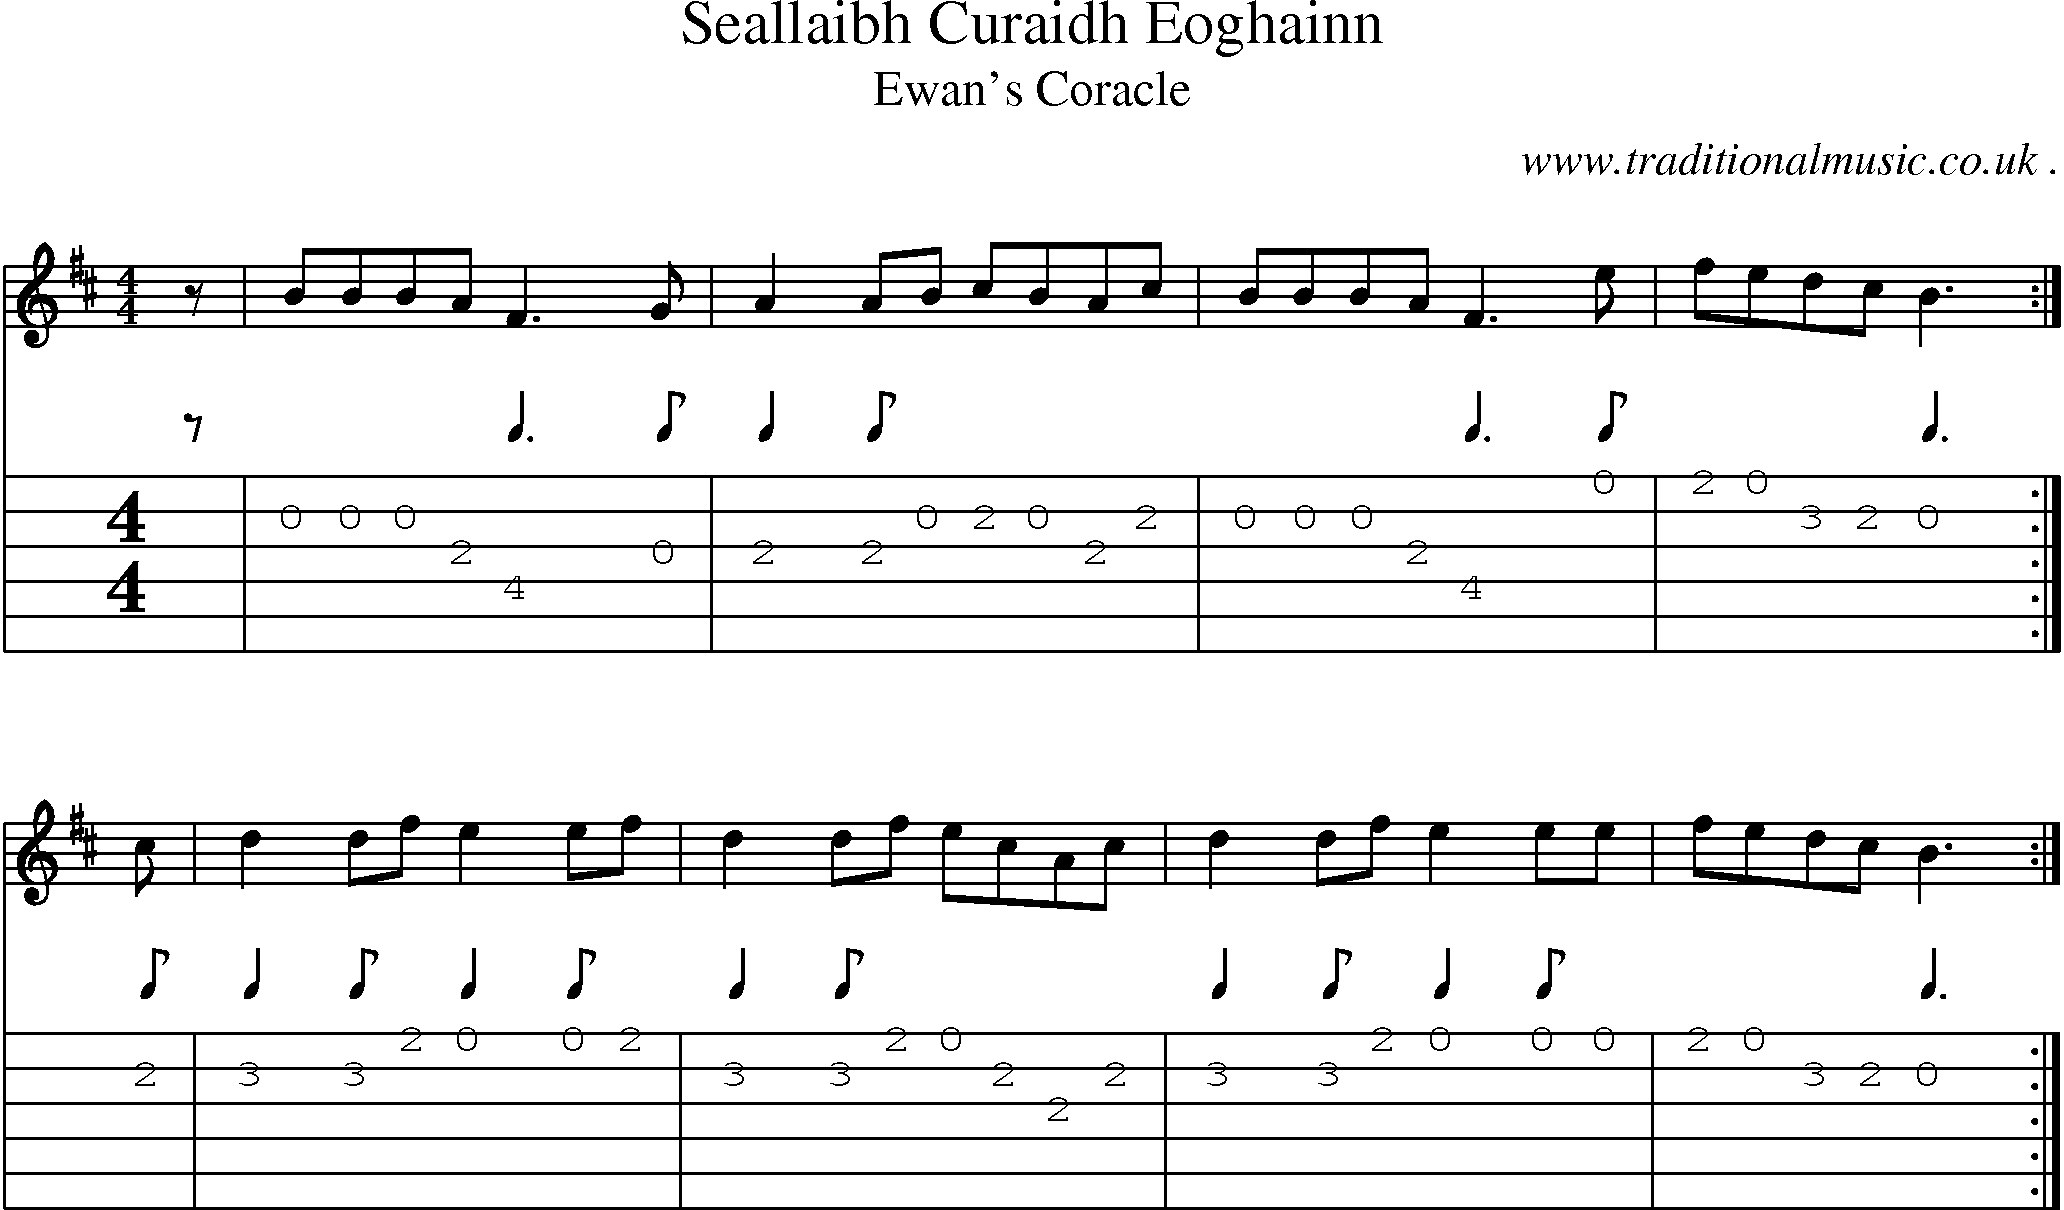 Sheet-music  score, Chords and Guitar Tabs for Seallaibh Curaidh Eoghainn